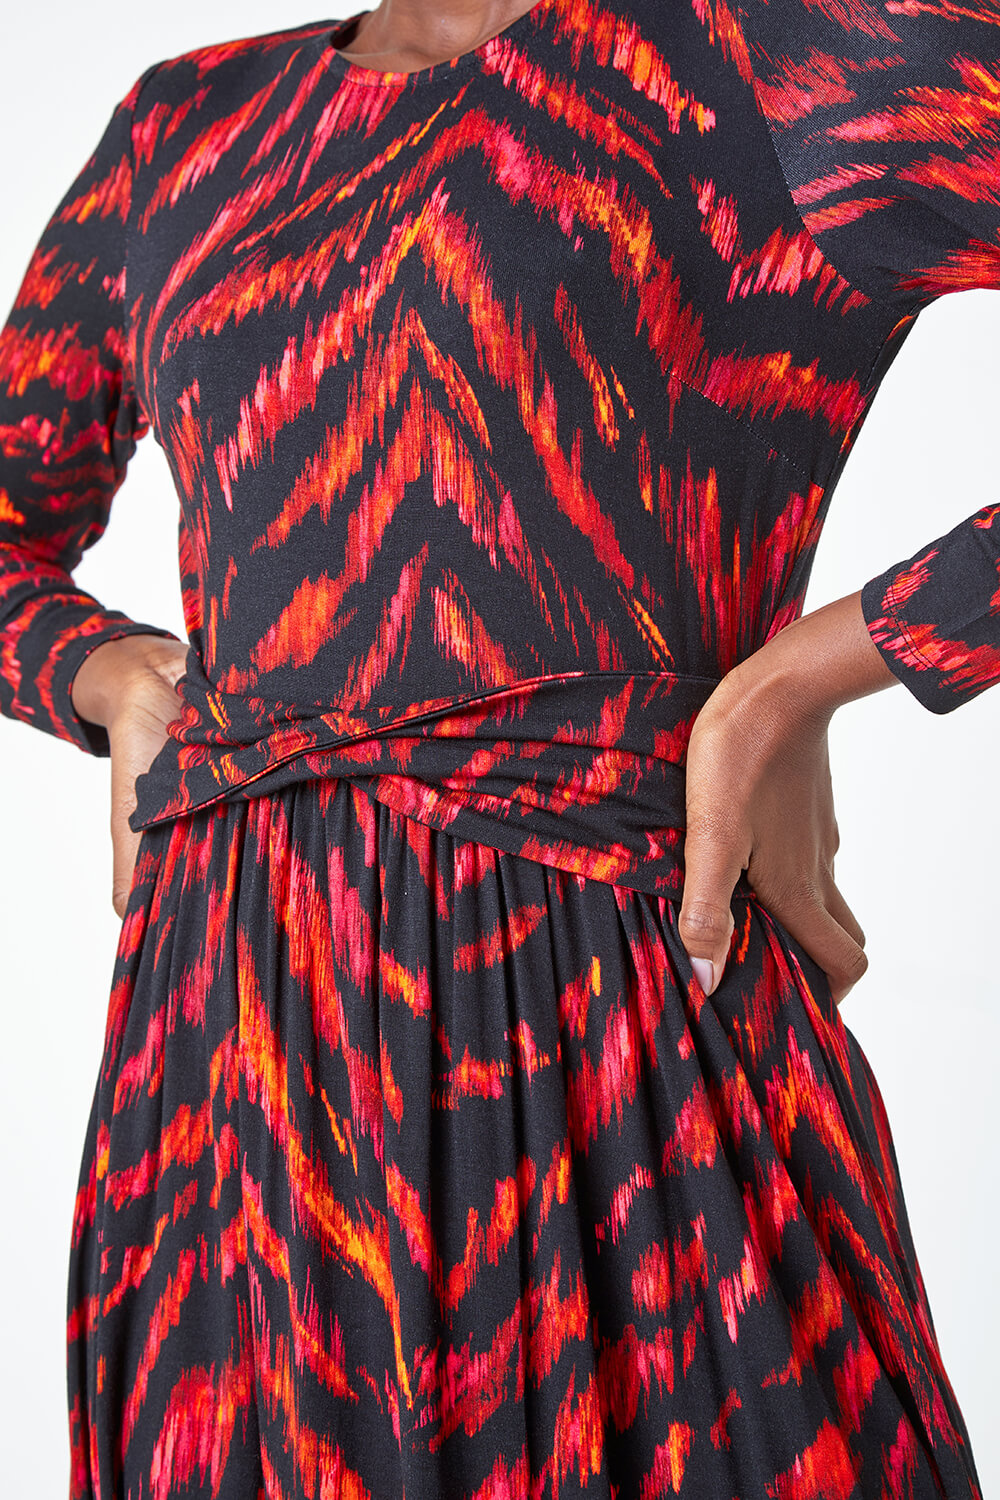 PINK Tiger Print Twist Waist Midi Stretch Dress, Image 5 of 5